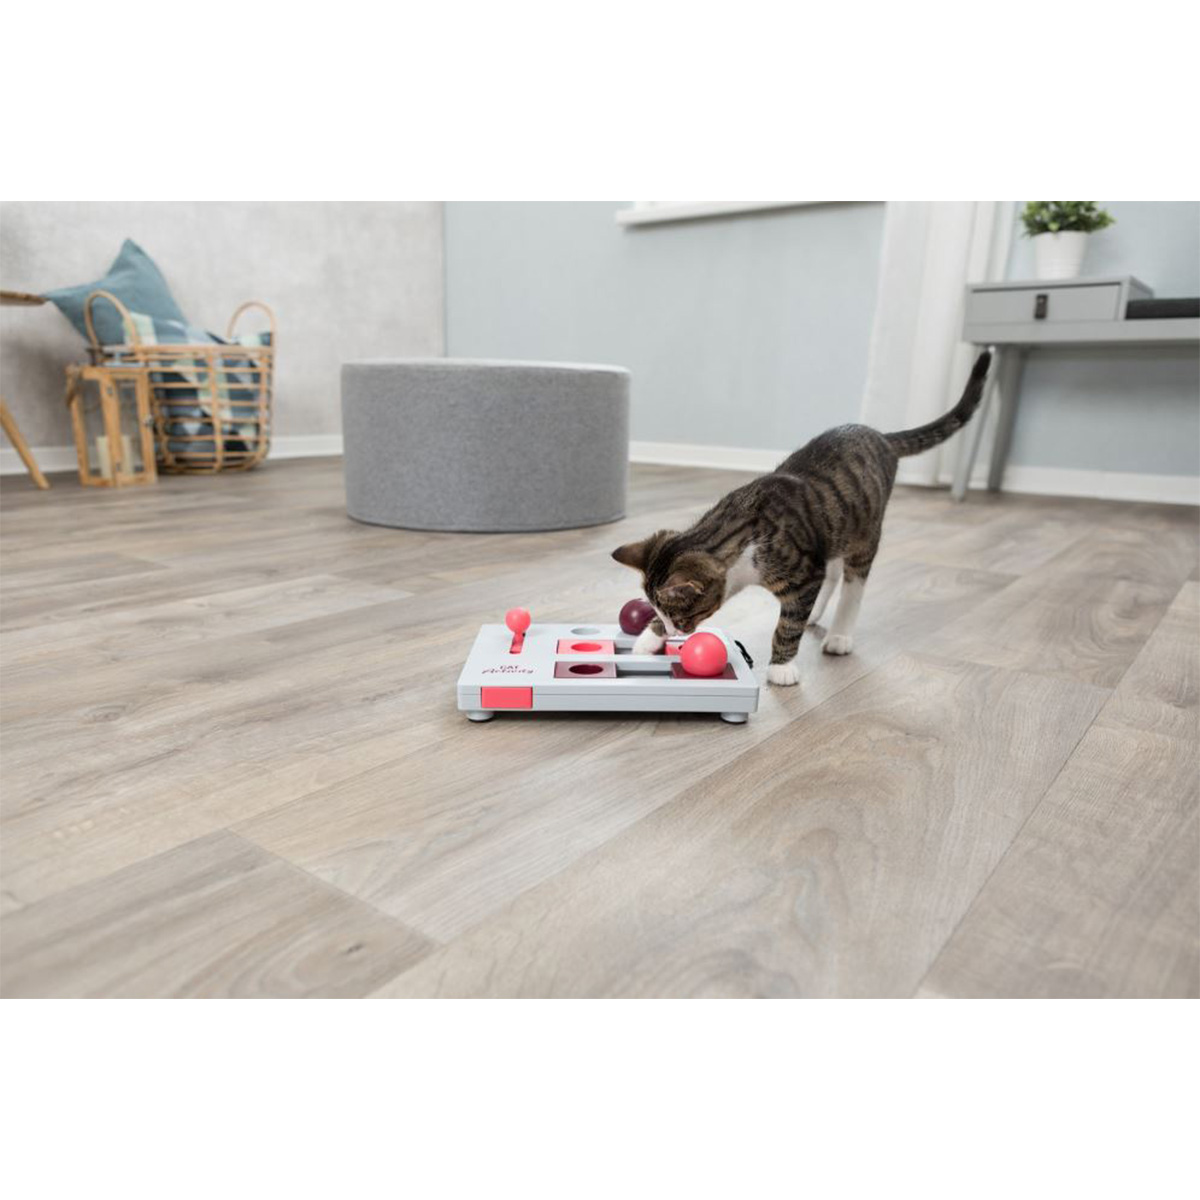 Trixie Cat Activity Brain Mover hračka podporující inteligenci